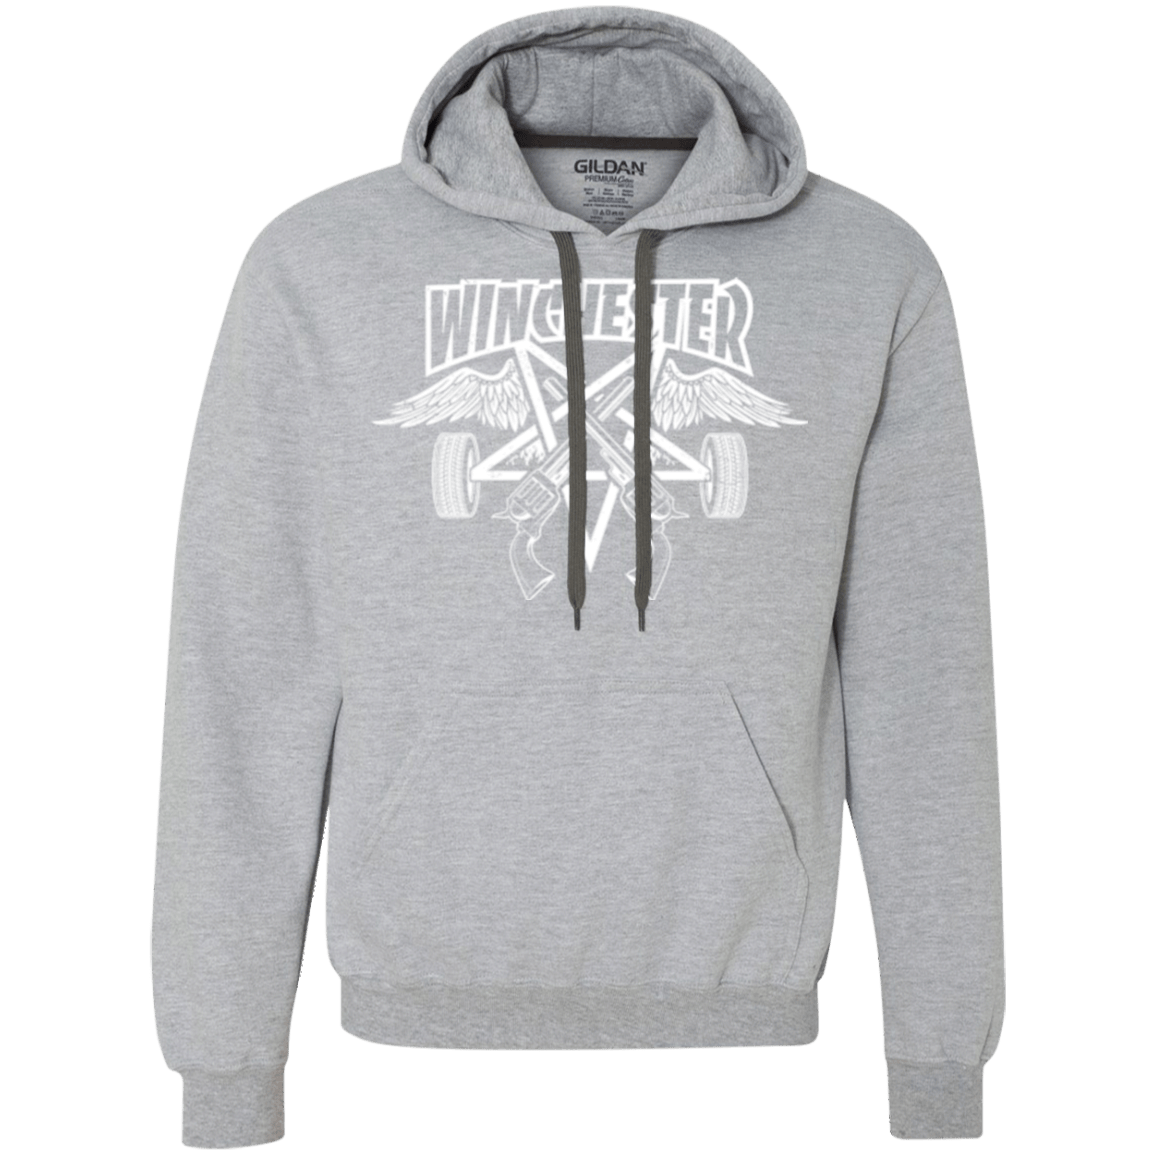 Sweatshirts Sport Grey / Small WINCHESTER Premium Fleece Hoodie